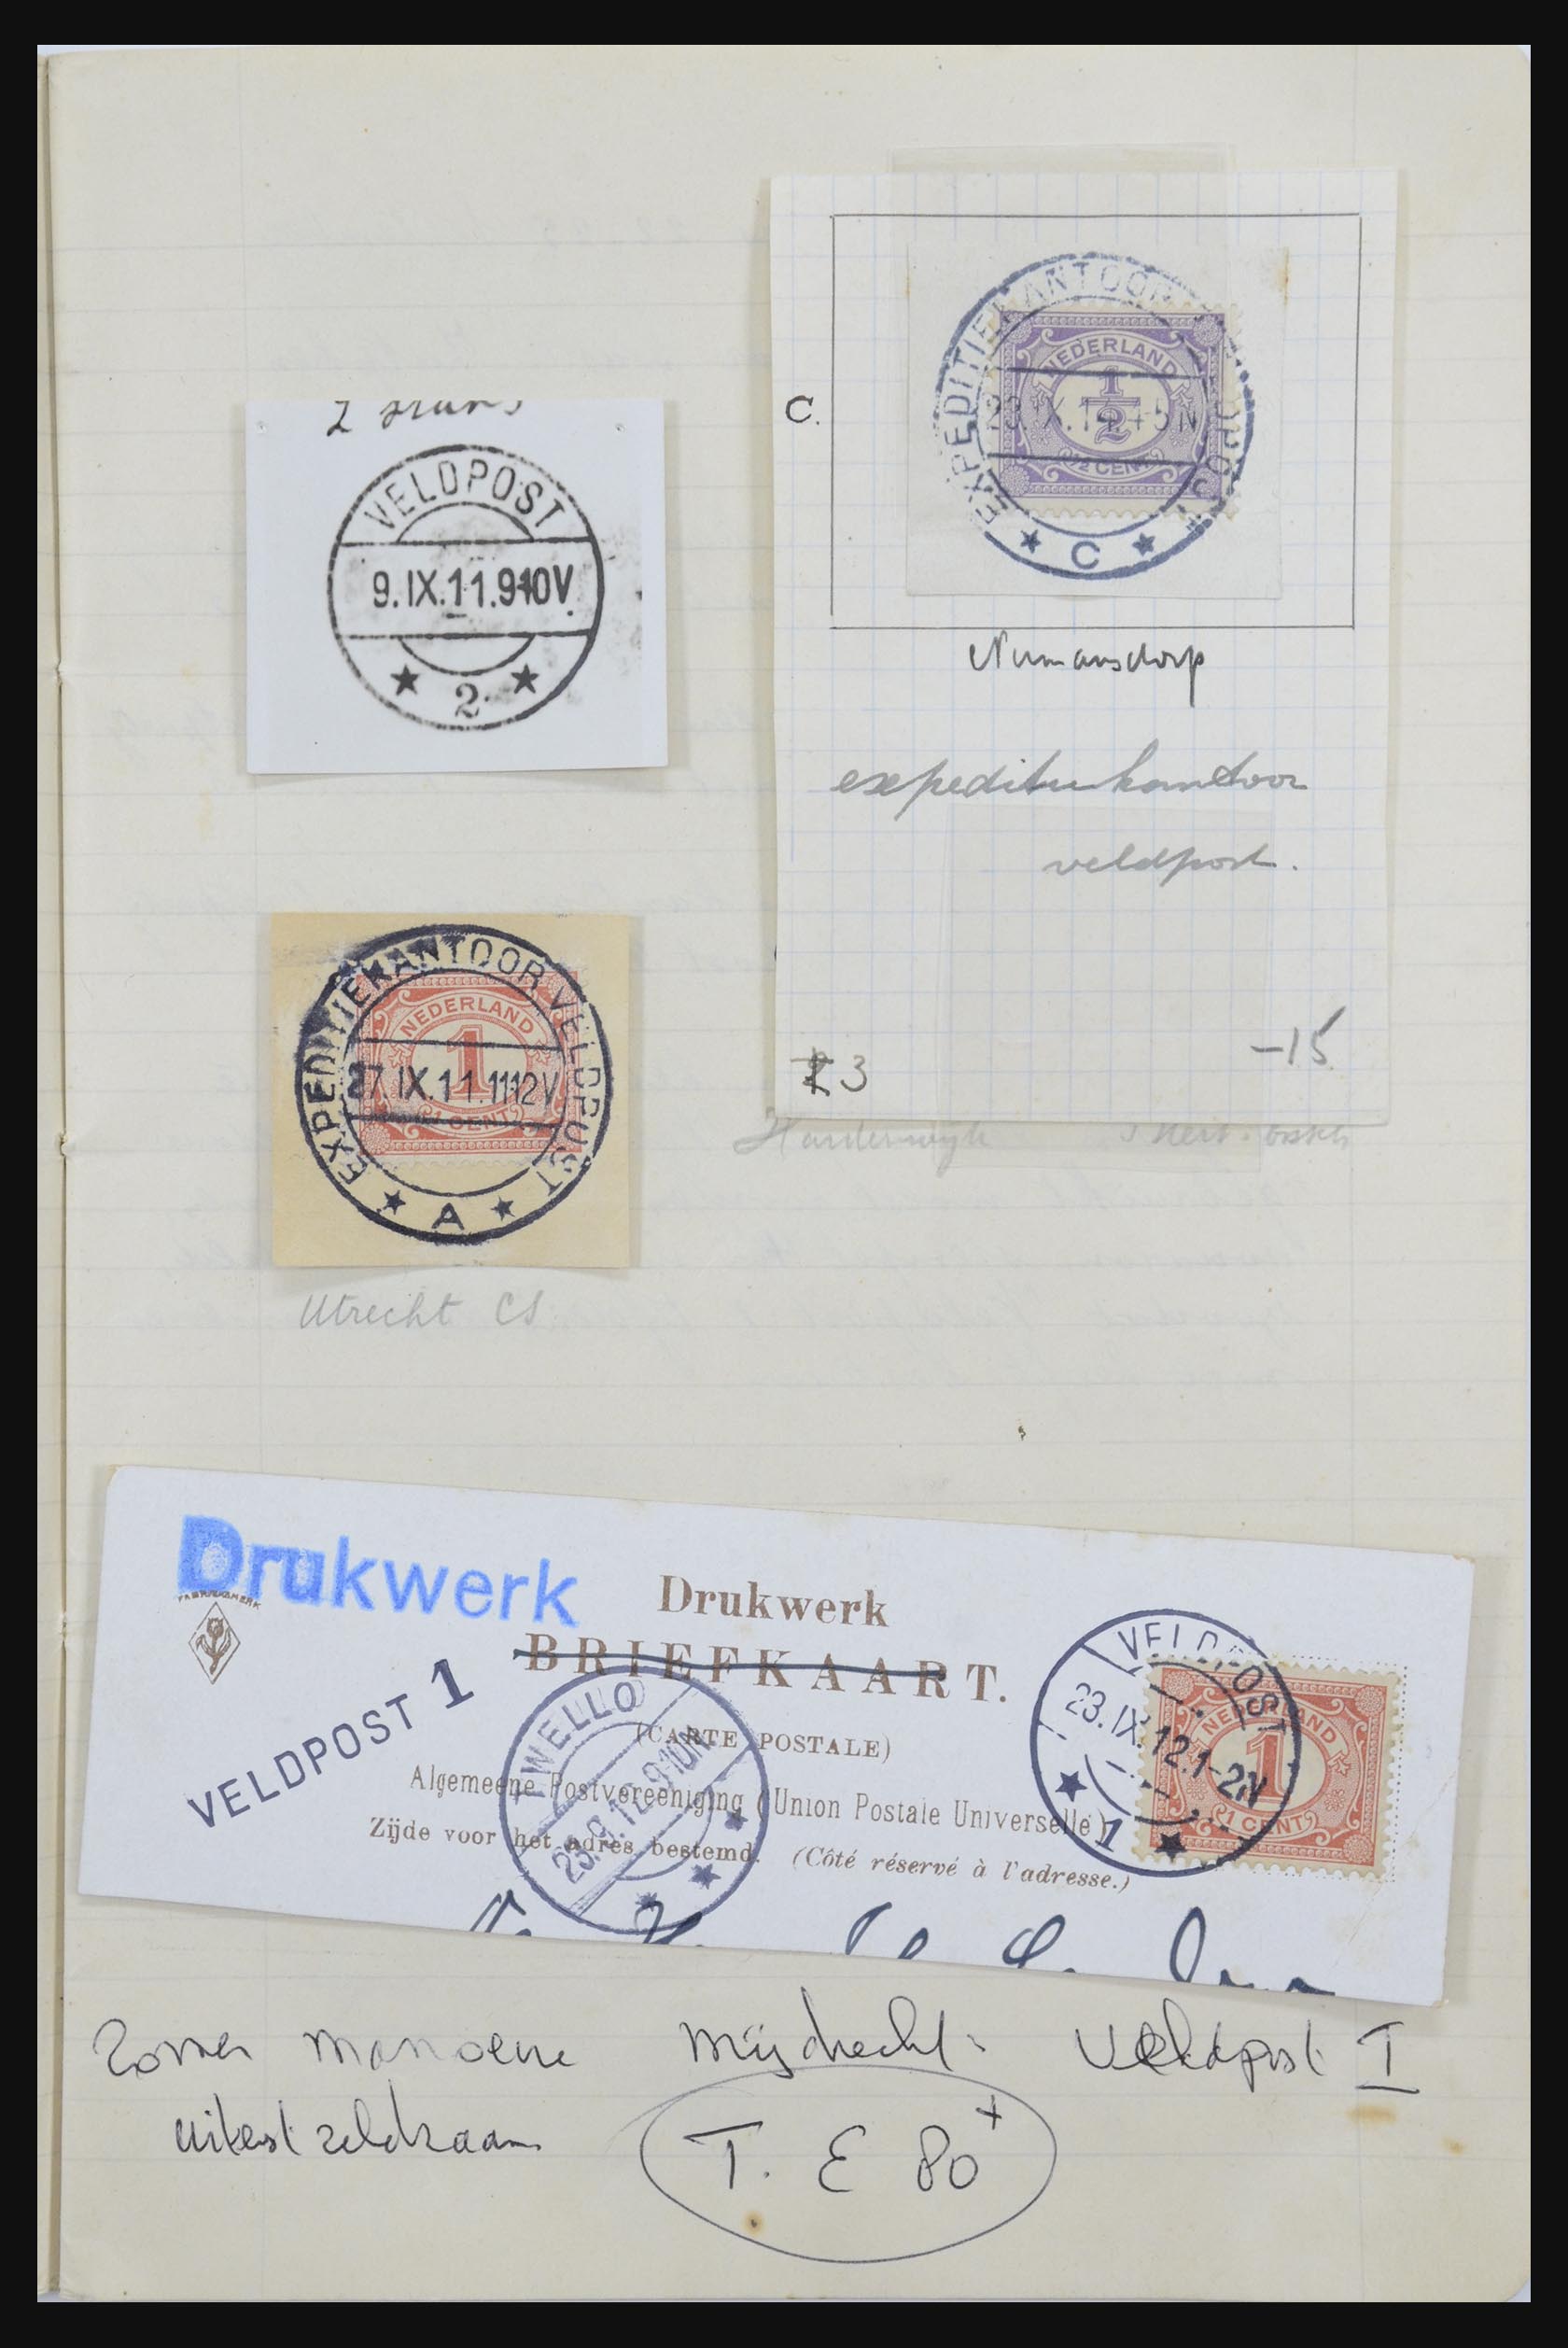 31976 004 - 31976 Nederland stempels 1900-1940.